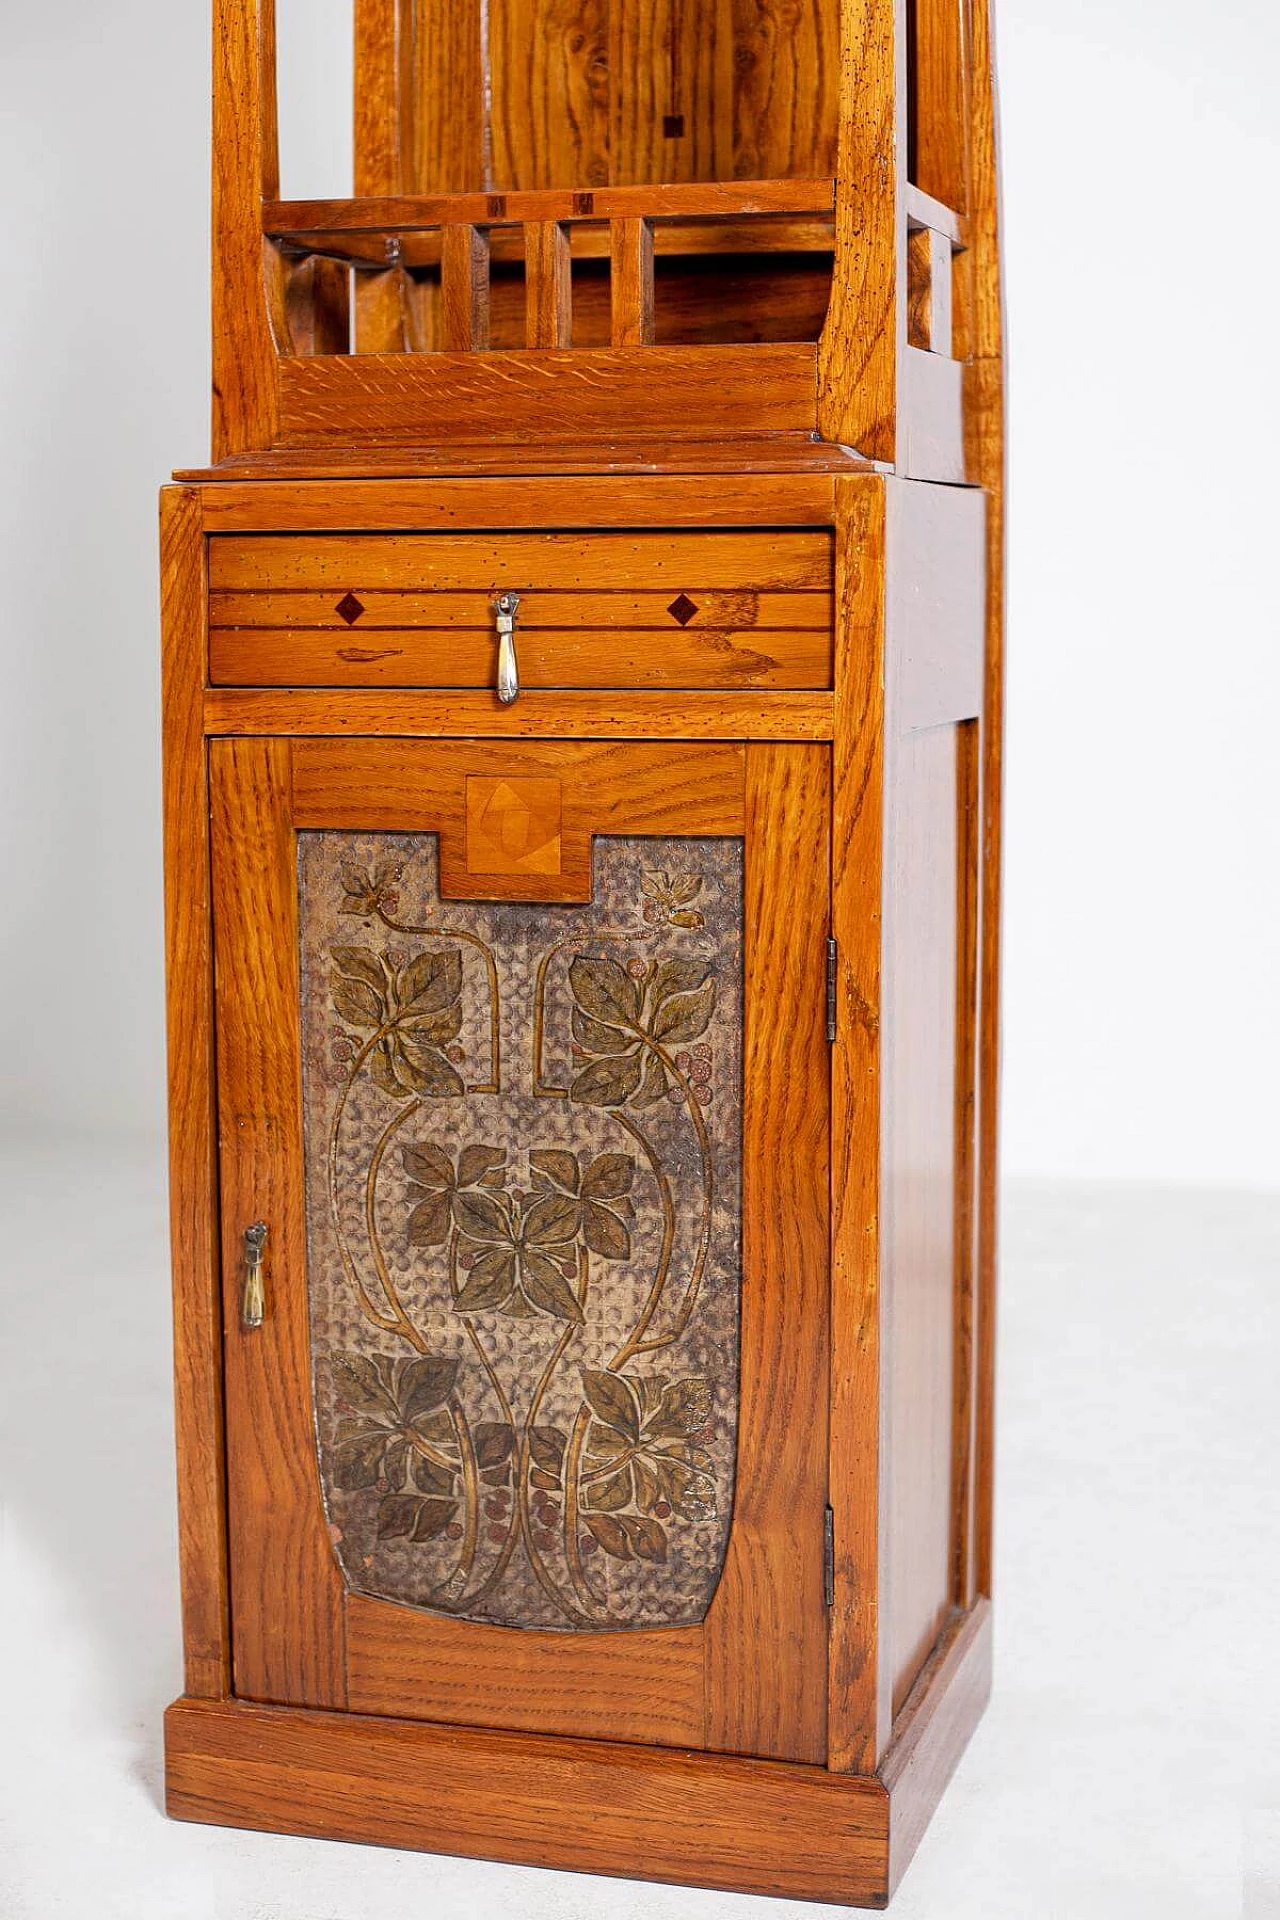 Mobile armadio in legno intagliato in stile Art Nouveau, del '900 1403428